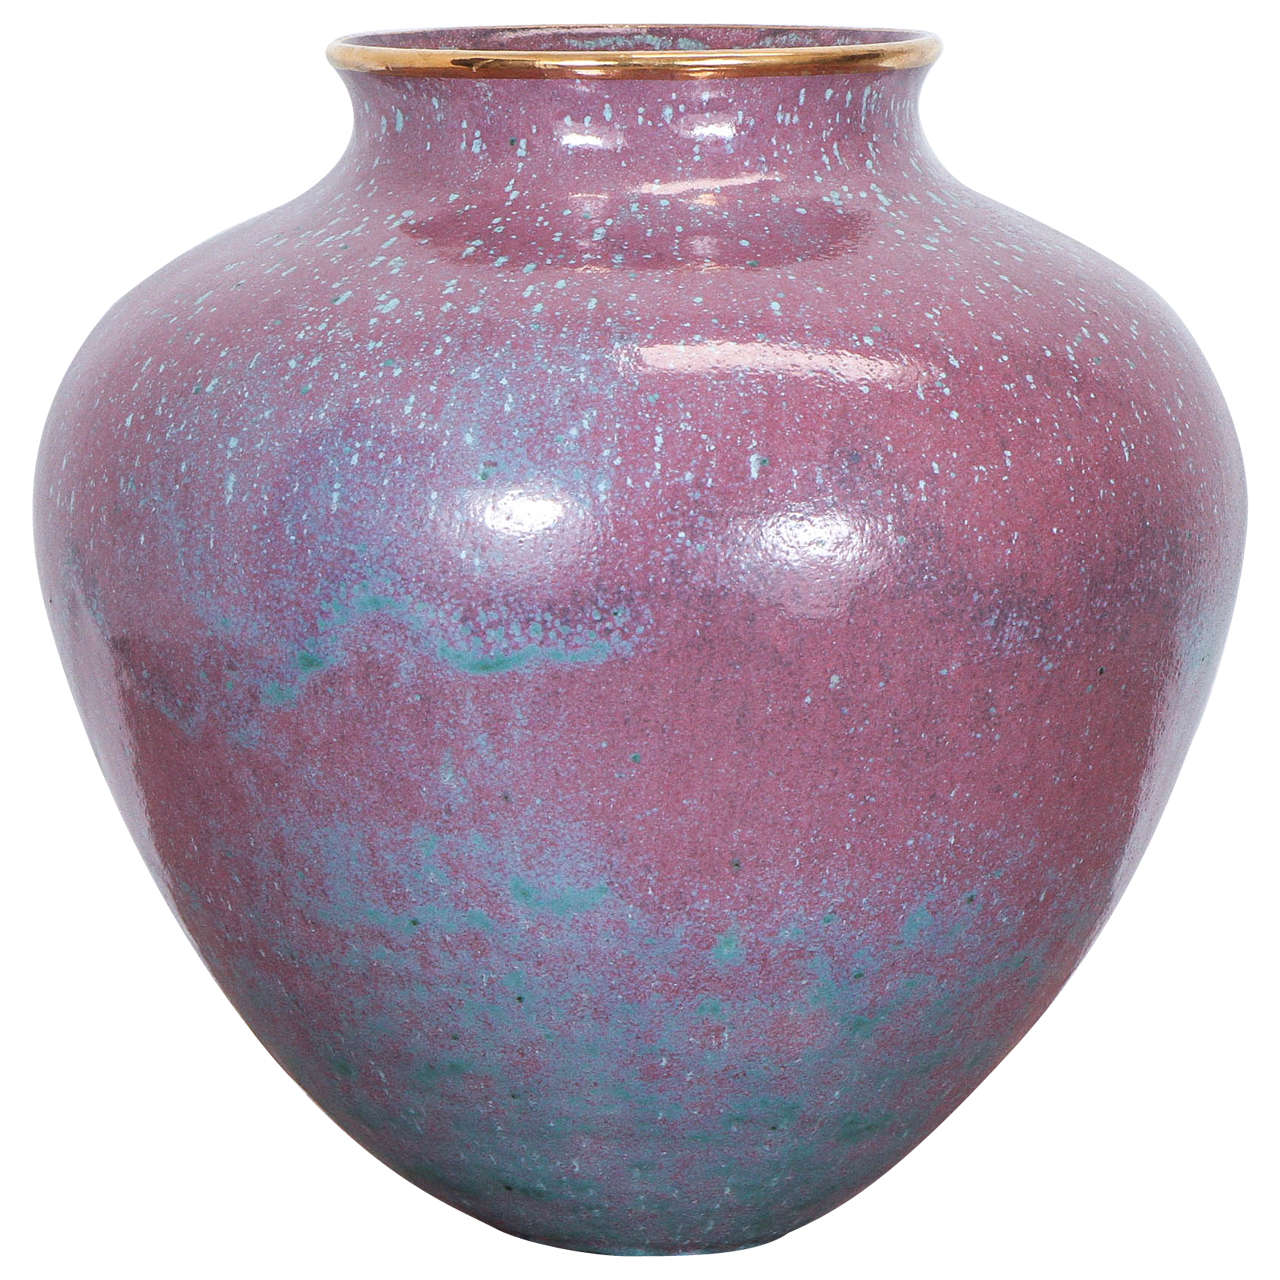 Spectacular Large Ceramic Vase by Klinsky for Steven Chase